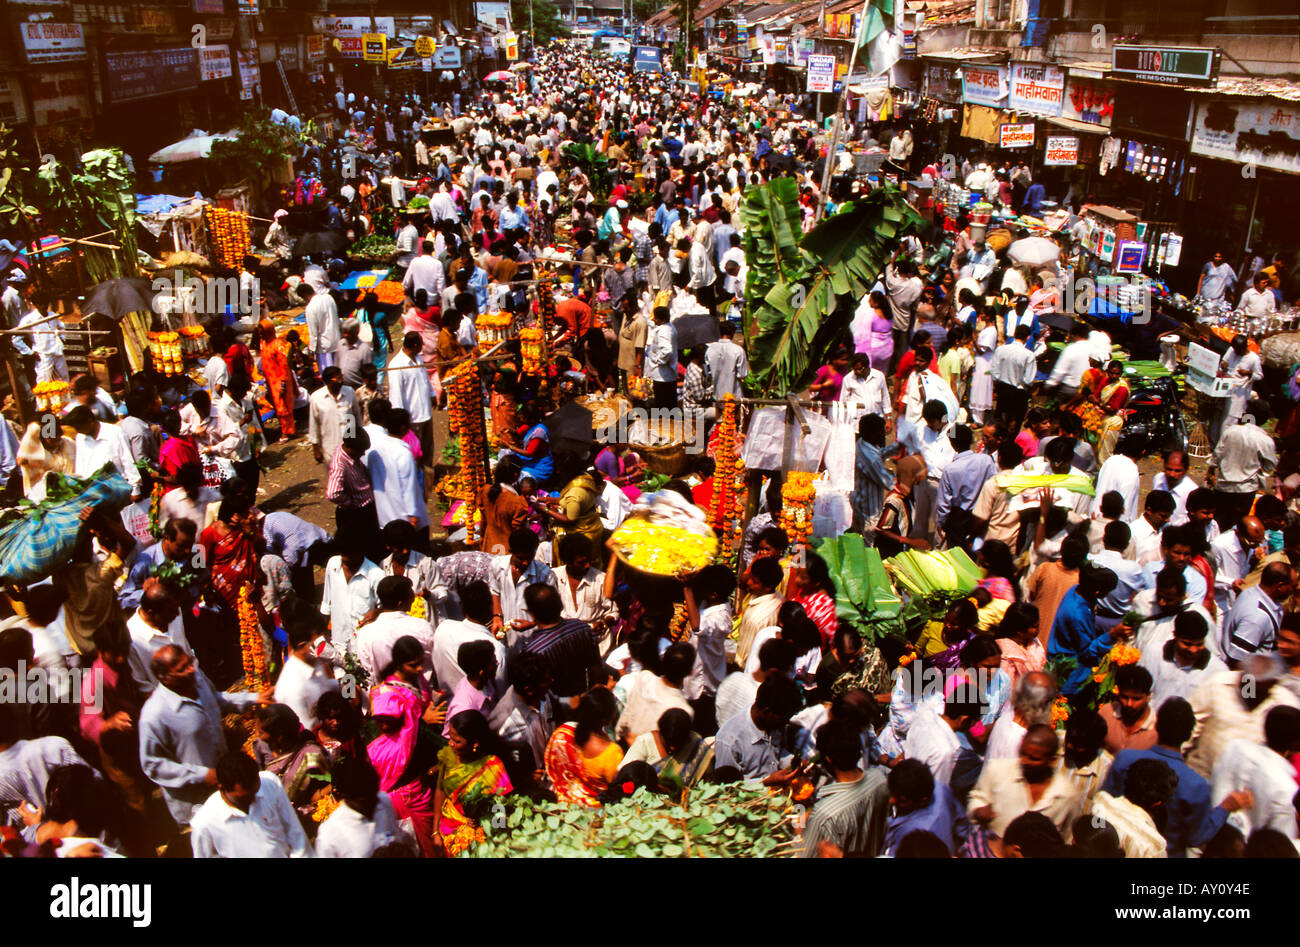 Les vagues de l'humanité. Buzz inimaginable de Dadar ouest de la rue du marché en ébullition la foule des acheteurs et des vendeurs. Asie Inde Mumbai Banque D'Images